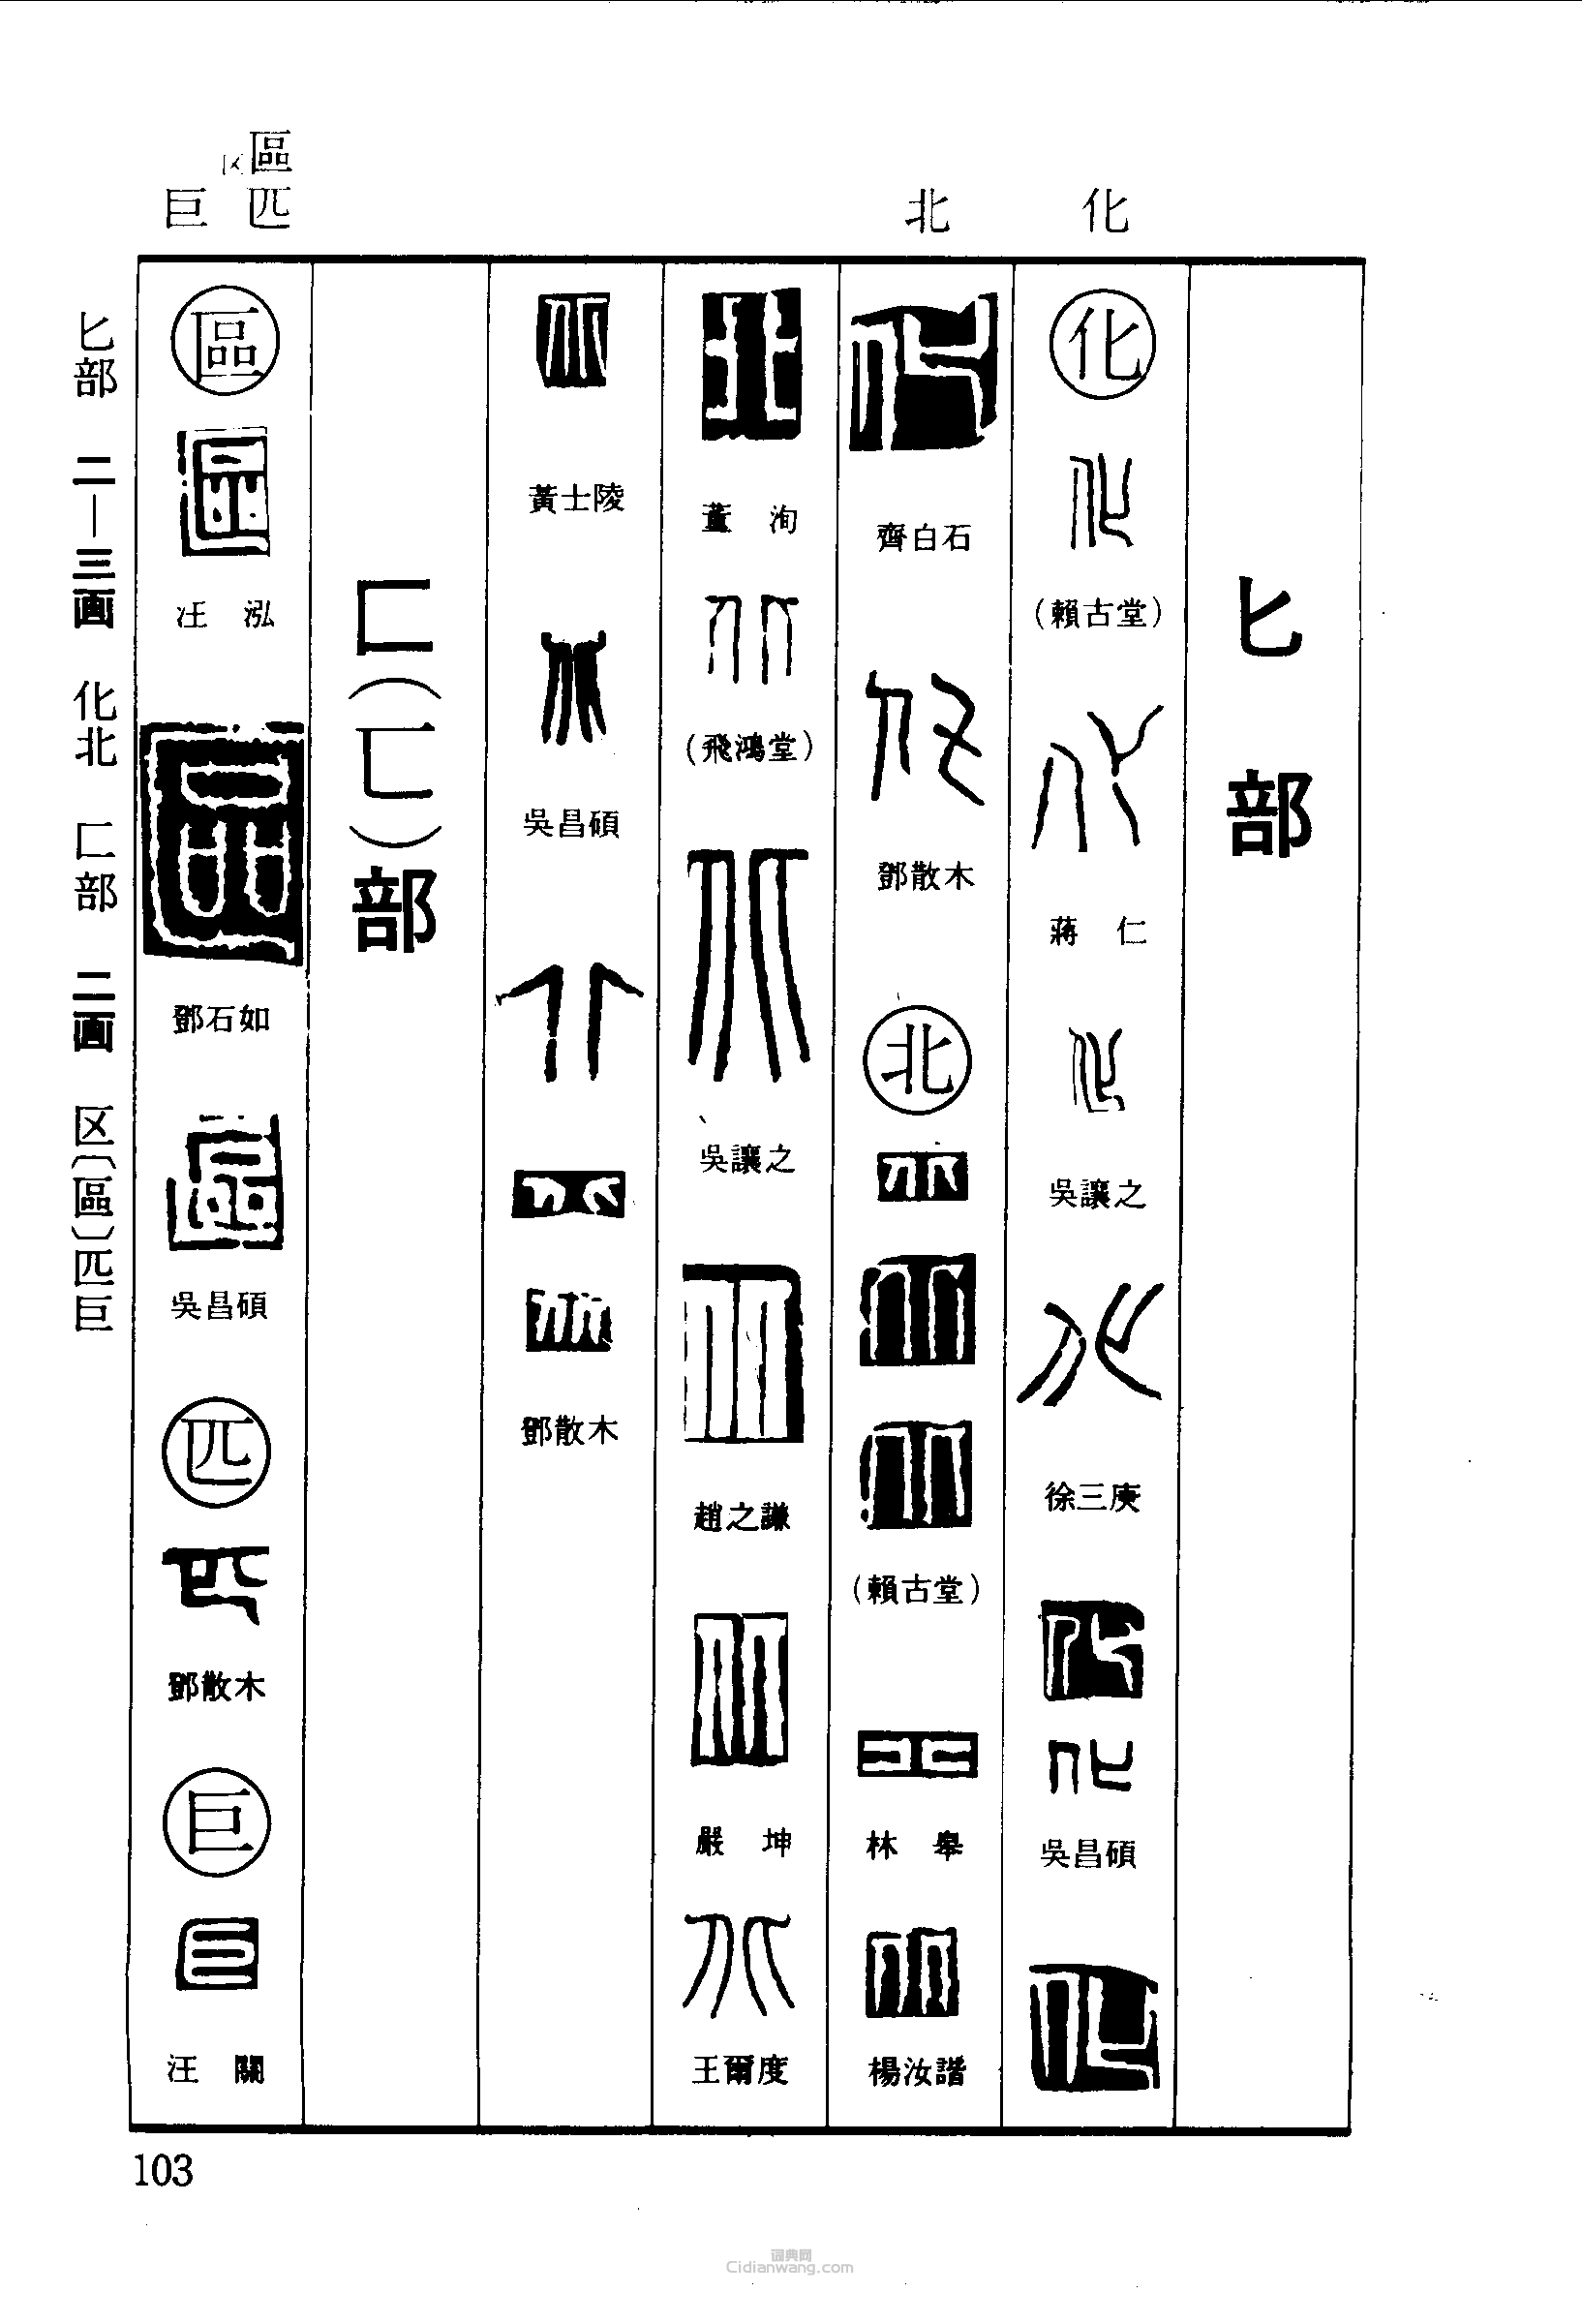 篆刻字典的篆刻印章化北區匹巨